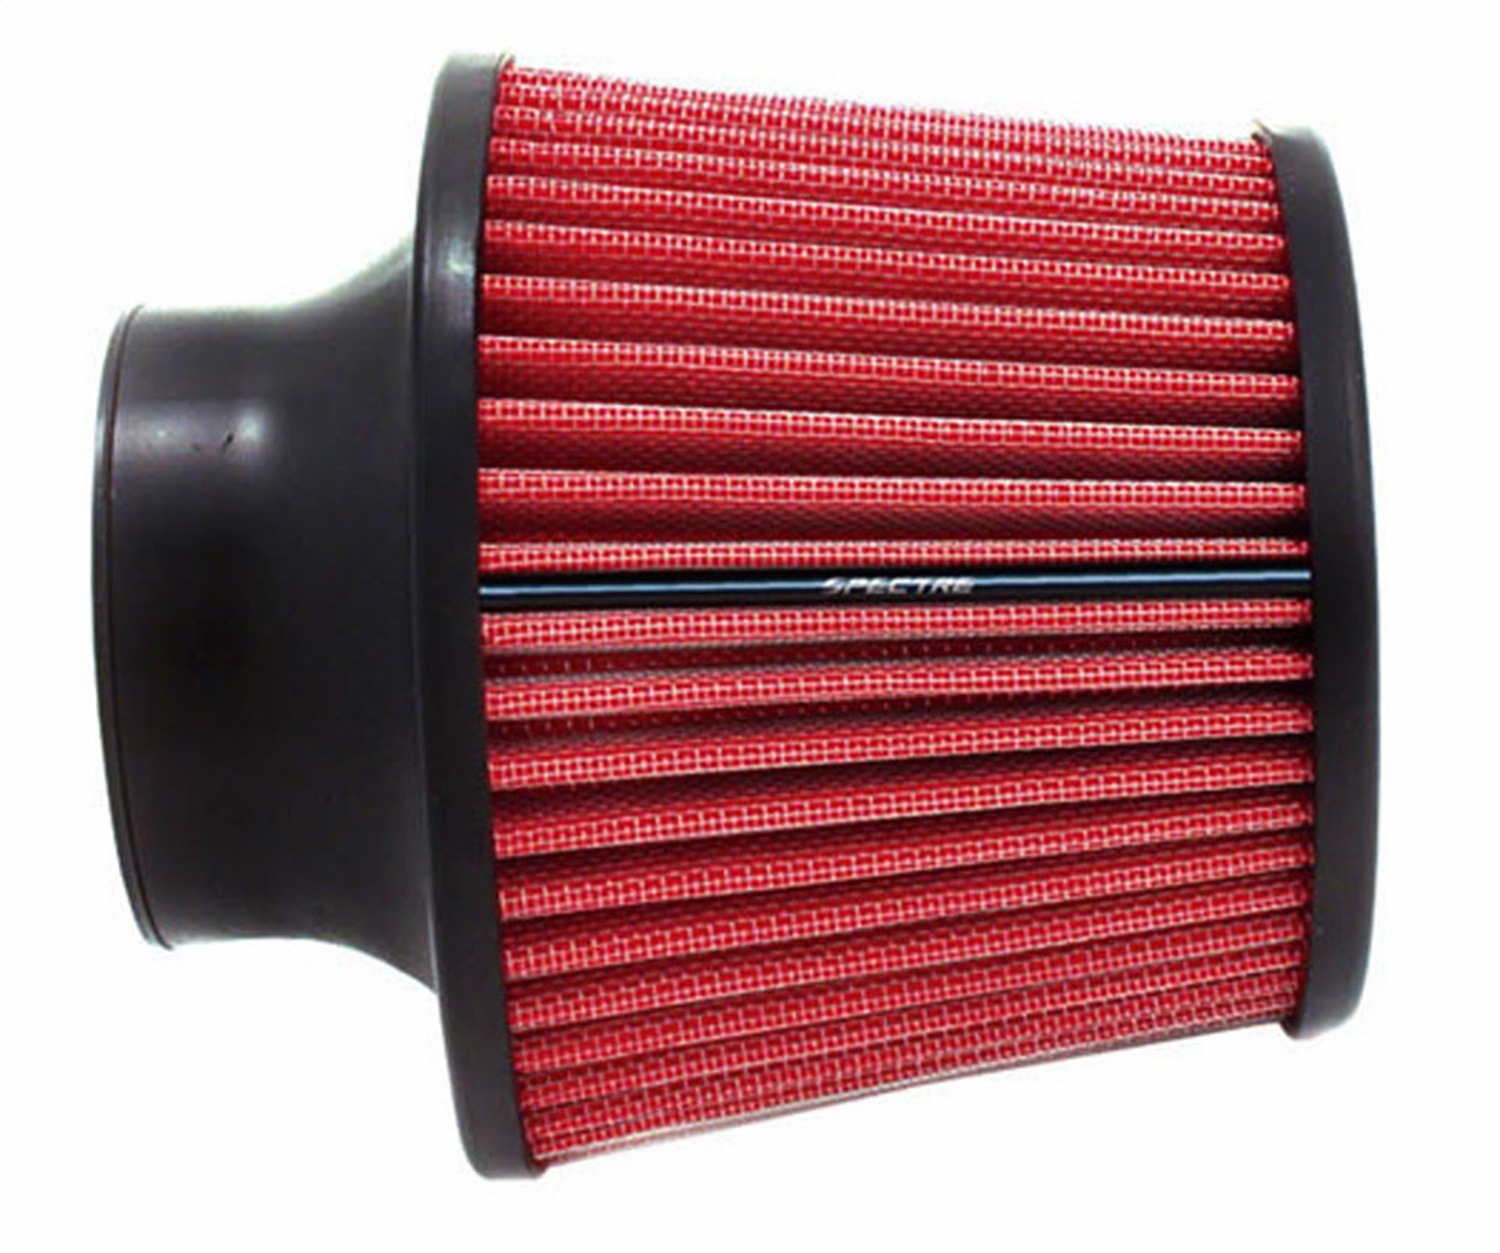 Продажи воздушный фильтр. Ona Air Filter 125 мм. 38242300 Воздушный фильтр. Фильтр автомобильный воздушный инжектор 73 мм High Flow Air Filter. Фильтр red7464.